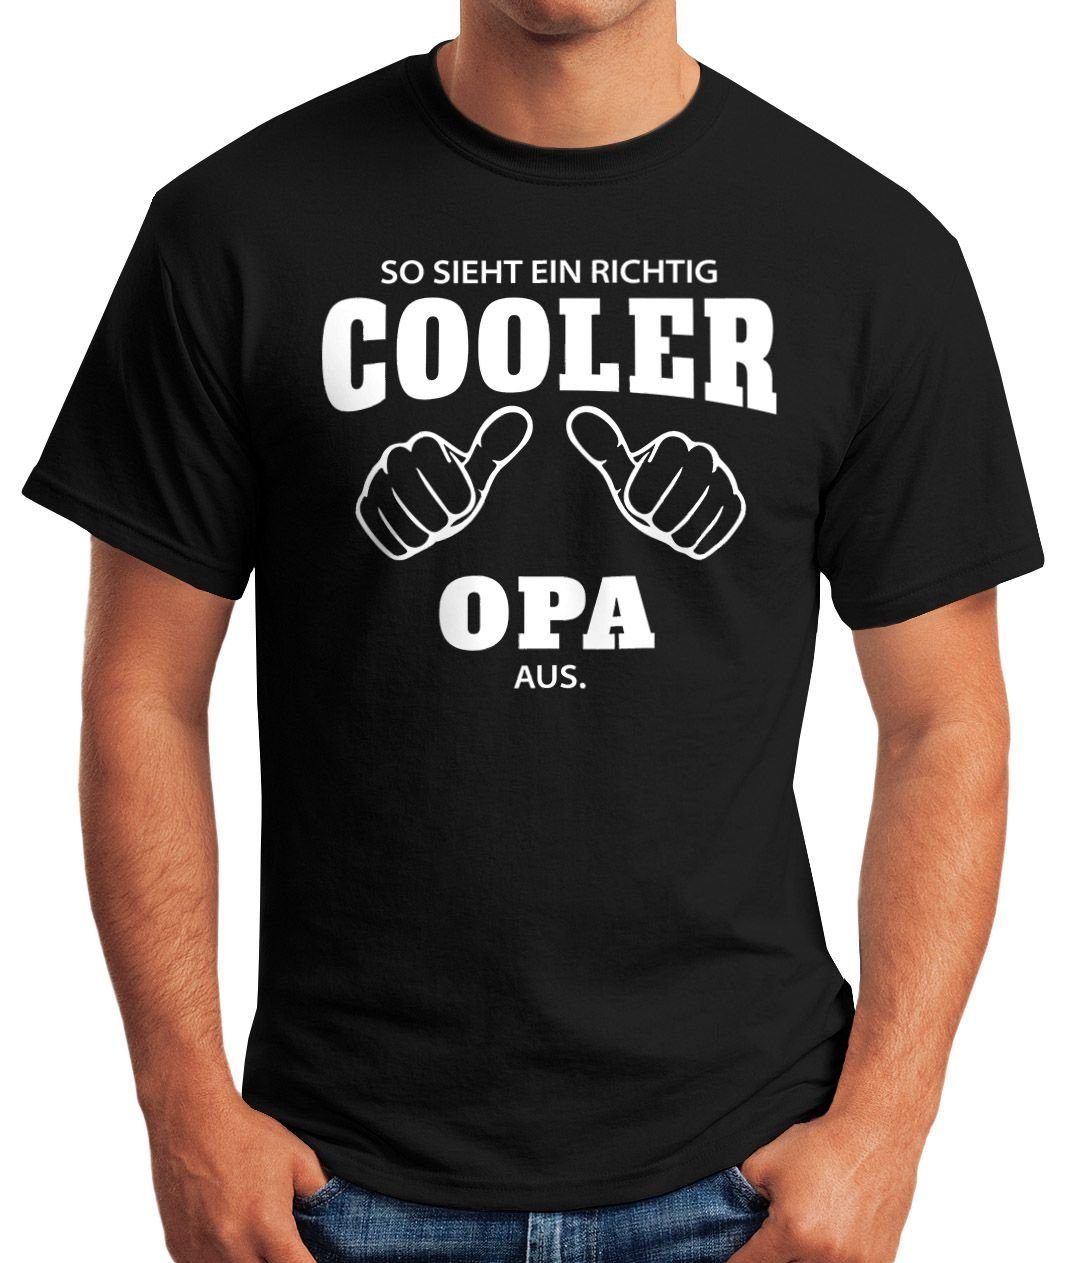 [object Moonworks® schwarz ein aus Fun-Shirt ein Object] MoonWorks richtig So Herren T-Shirt cooler sieht Opa richtig mit Print-Shirt Print